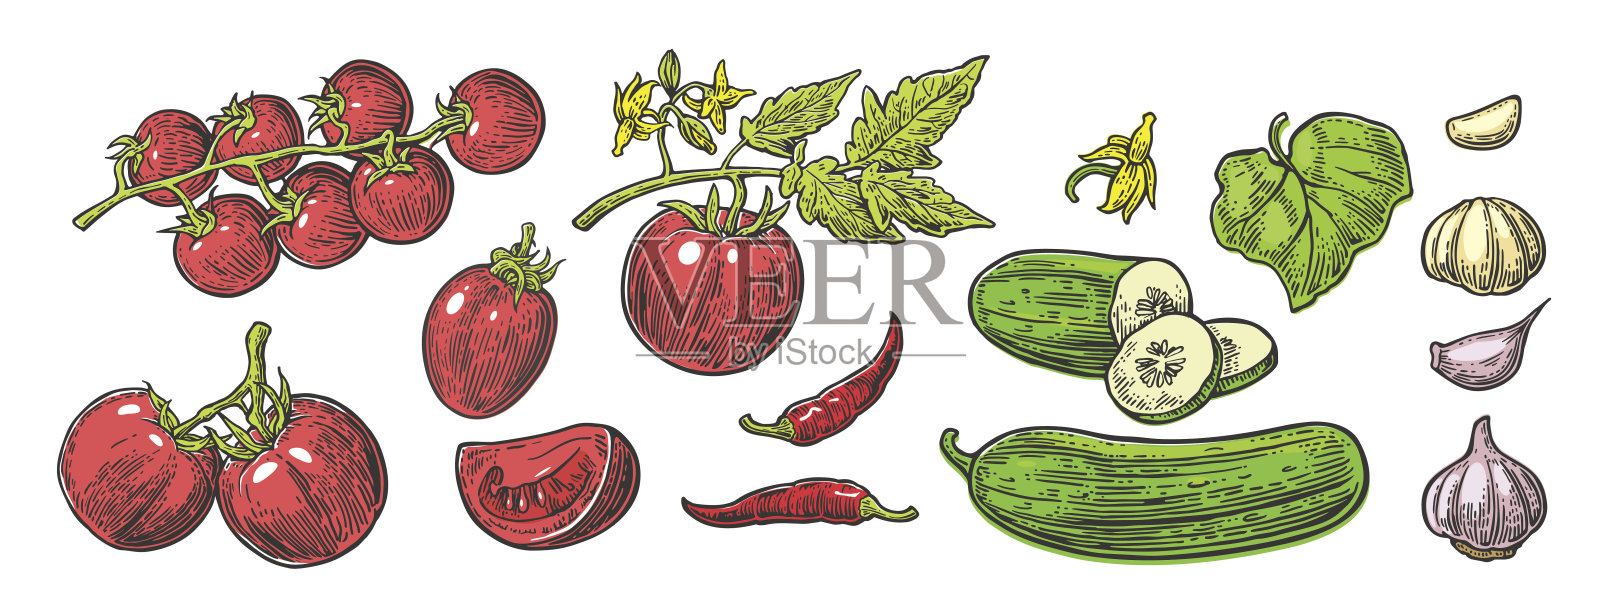 黄瓜，大蒜，辣椒，番茄，整片，半片，切片，叶和花。插画图片素材